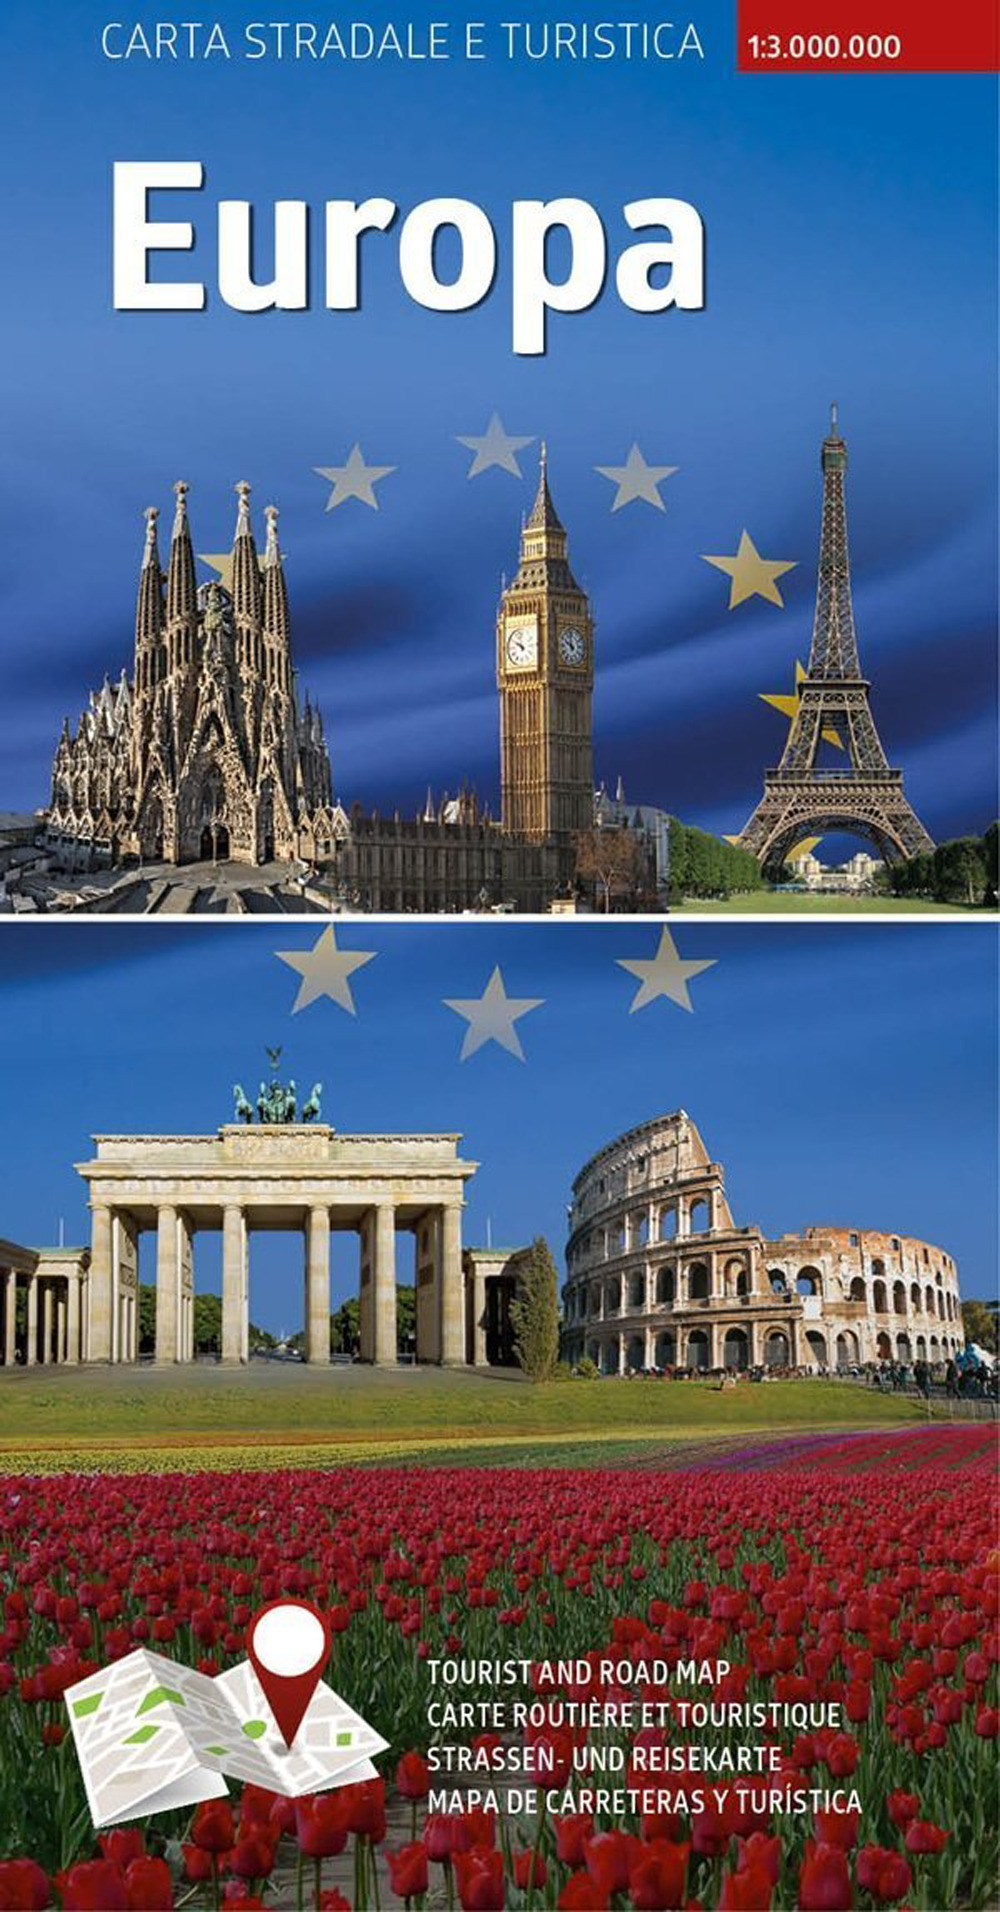 Carta stradale e turistica plastificata. Europa. 1:3.000.000